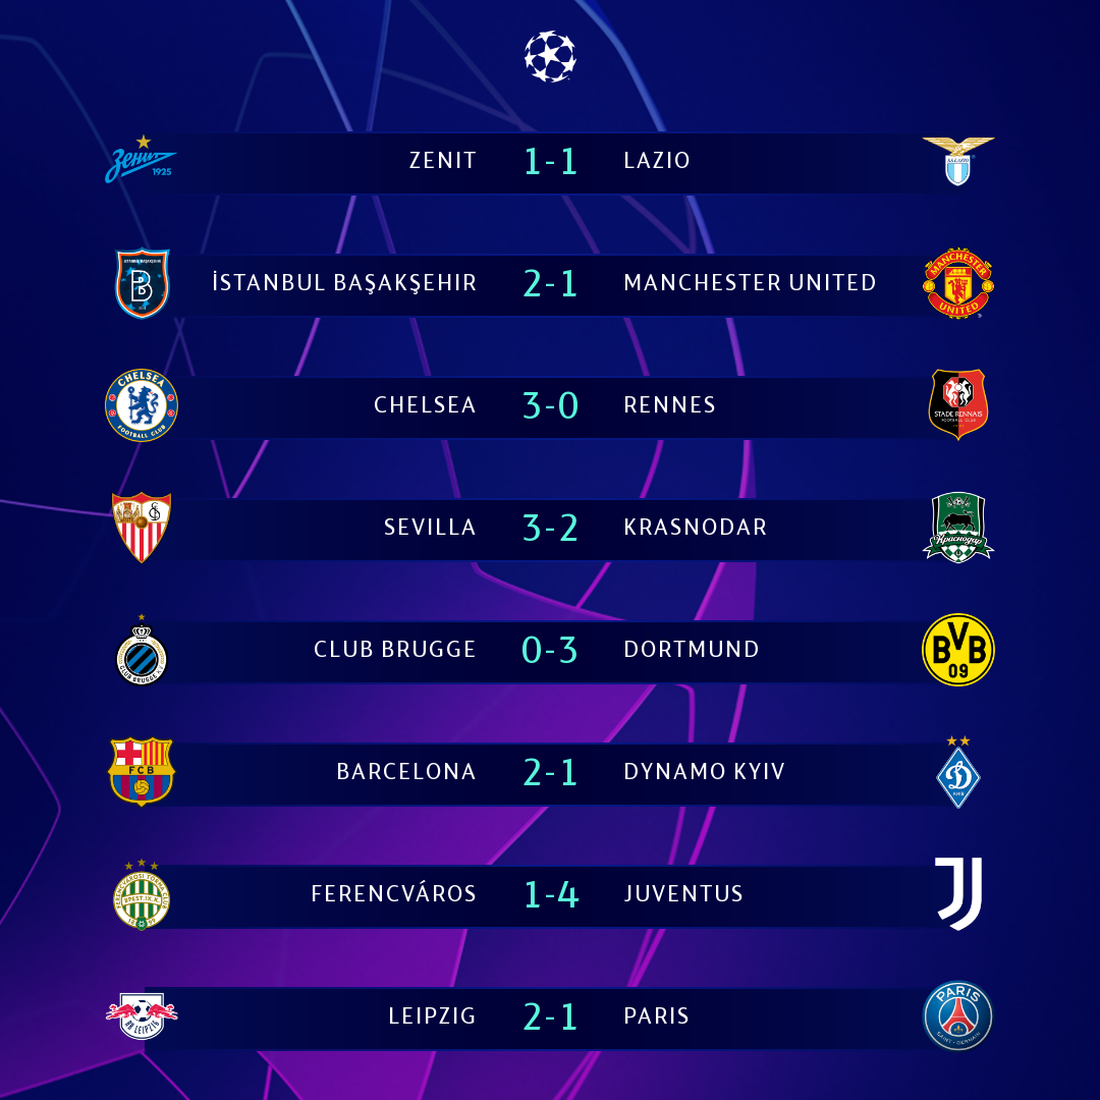 Toàn bộ kết quả Champions League sáng 5-11 và bảng xếp hạng sau 3 lượt trận - Ảnh 1.